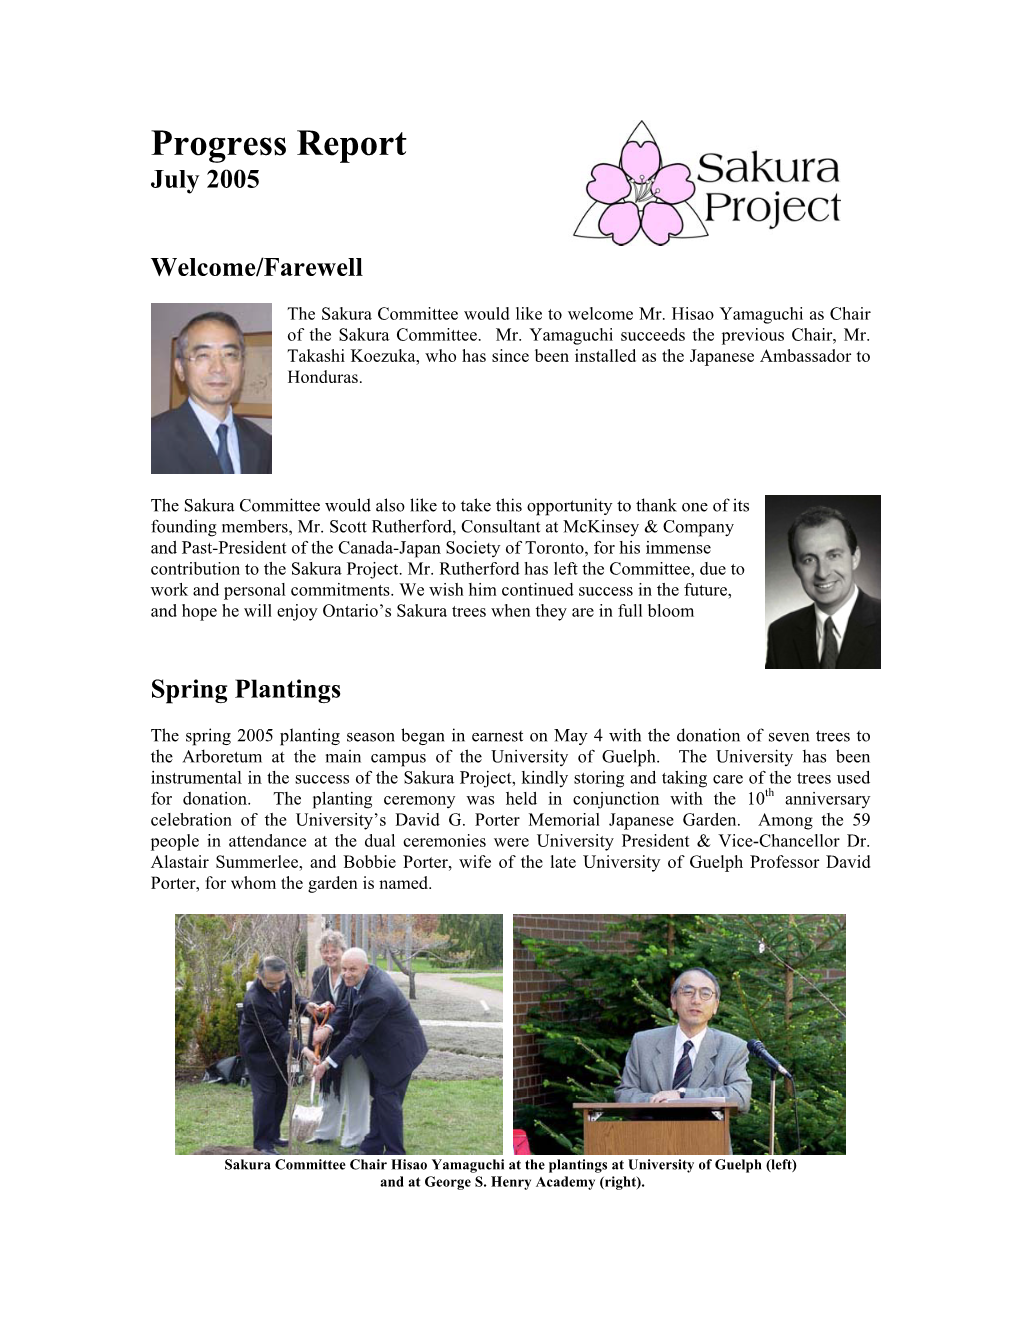 Sakura Project July Progress Report Now Online